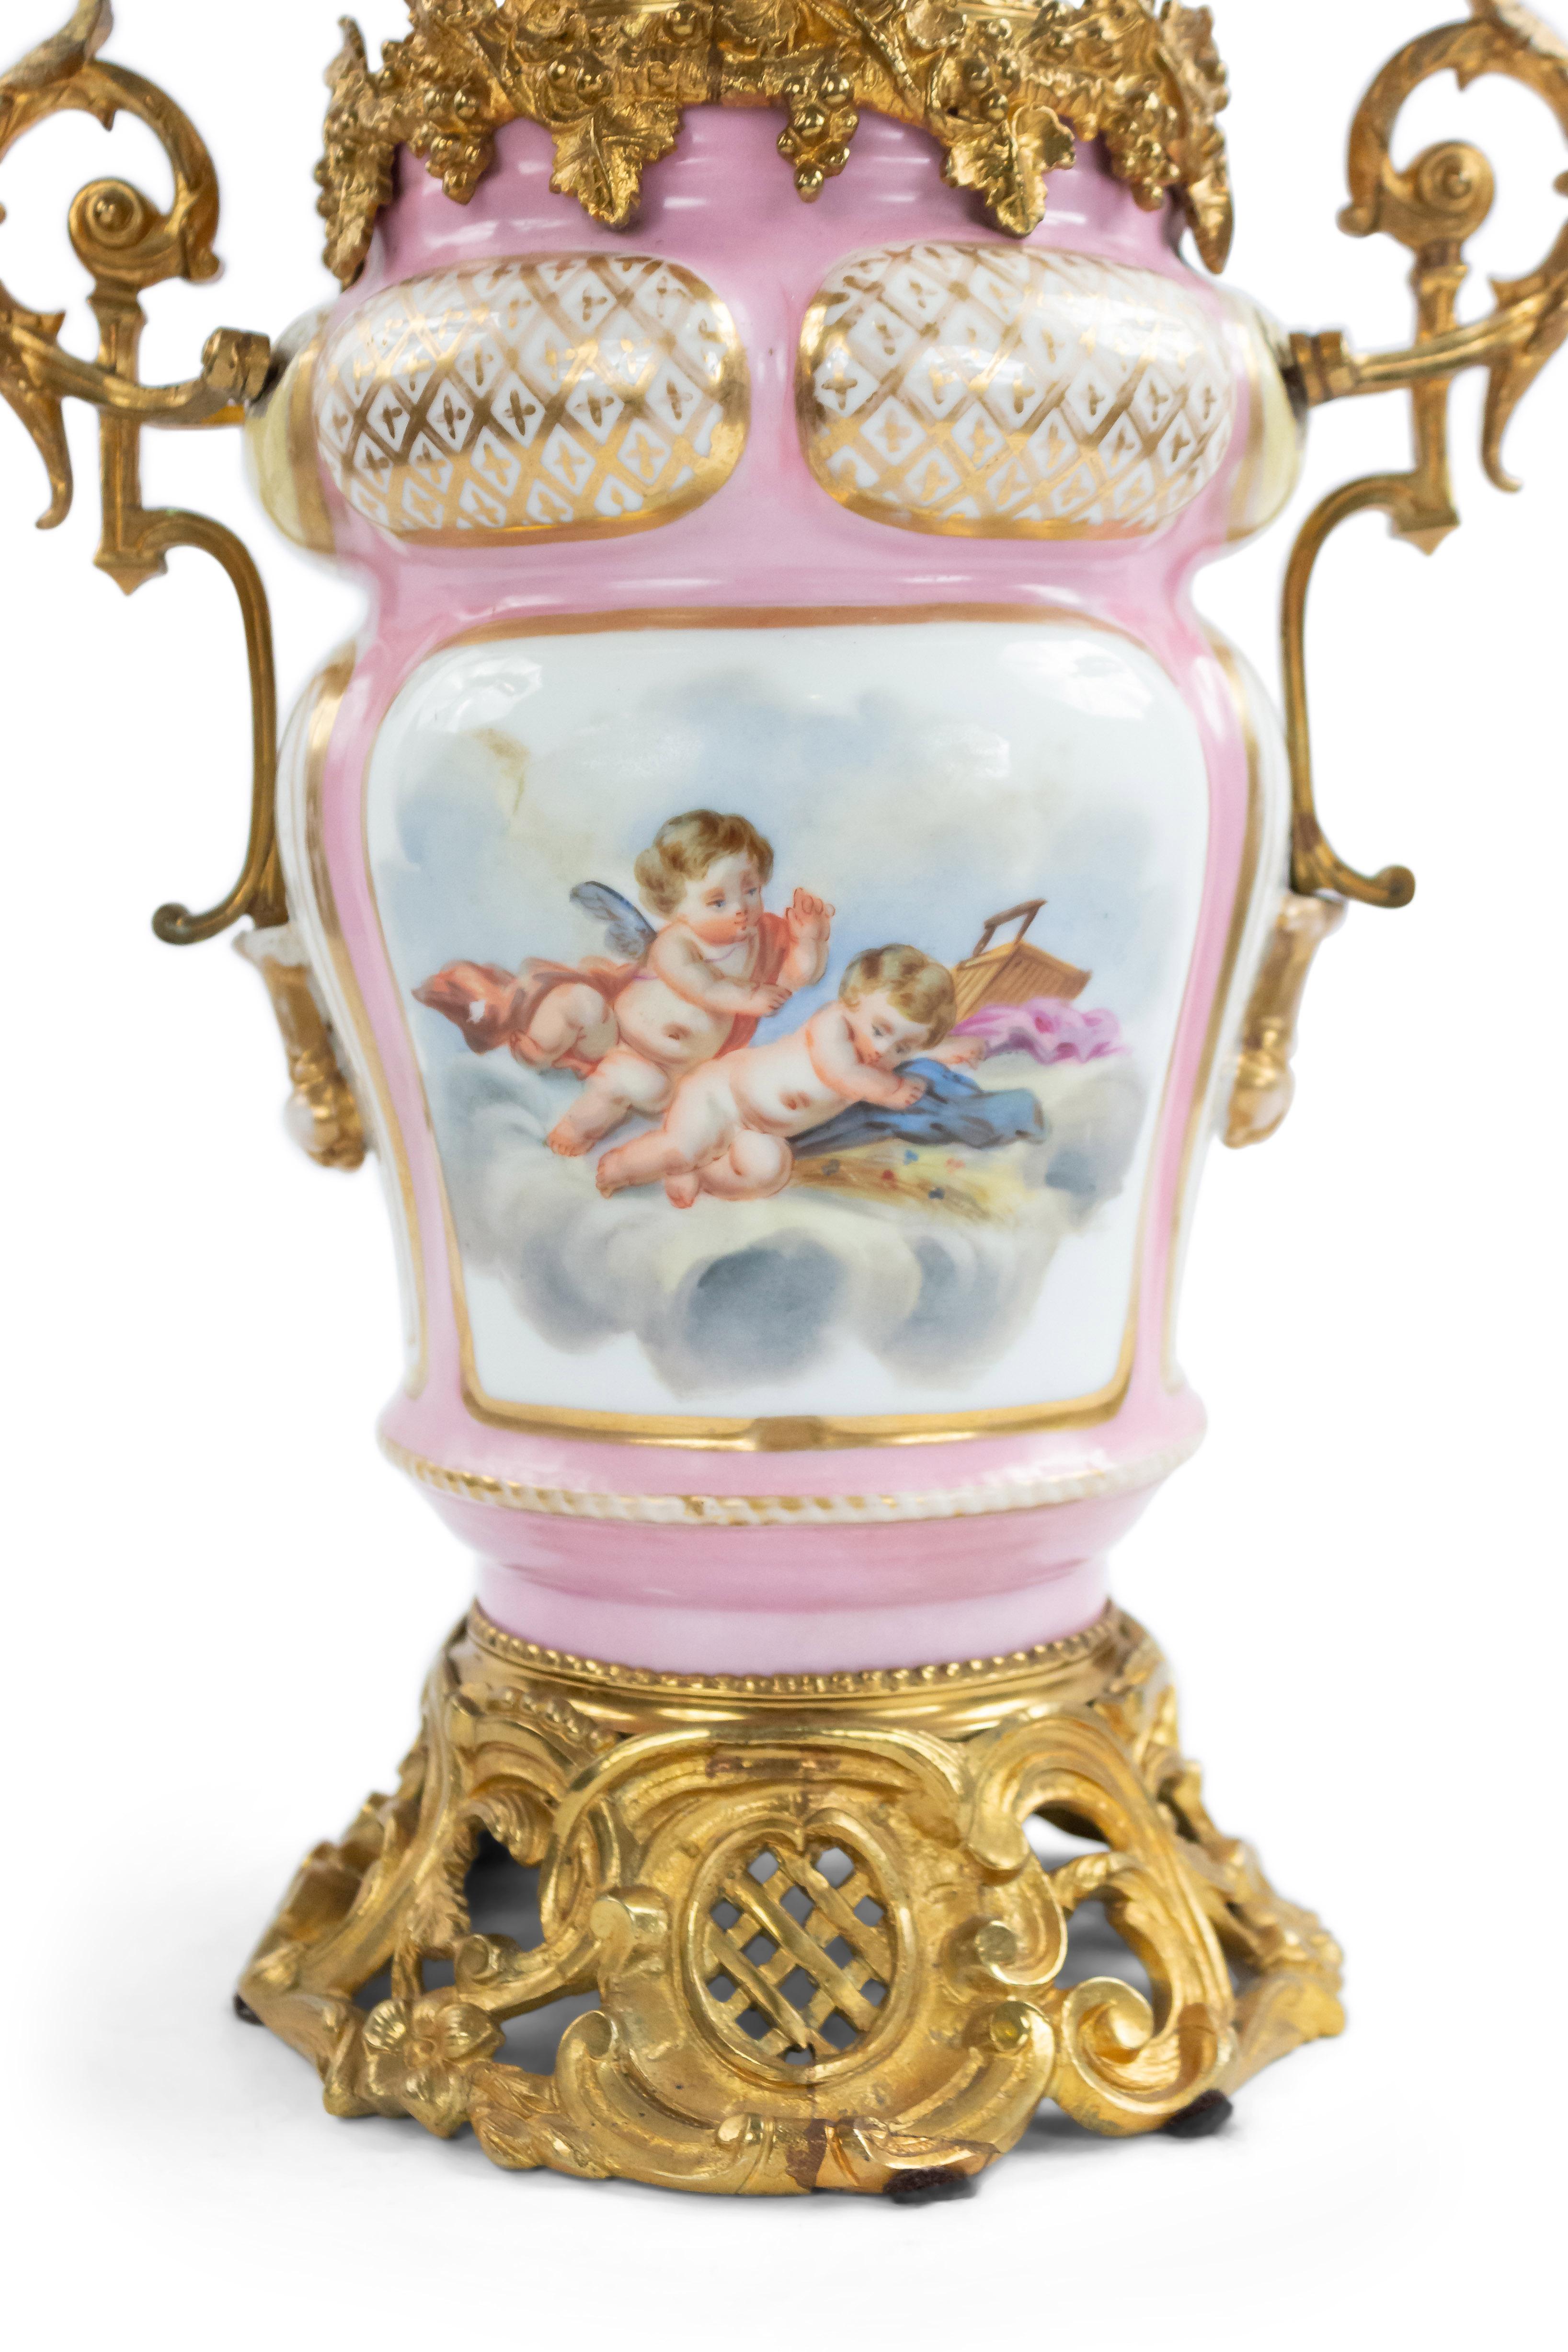 victorian porcelain lamps